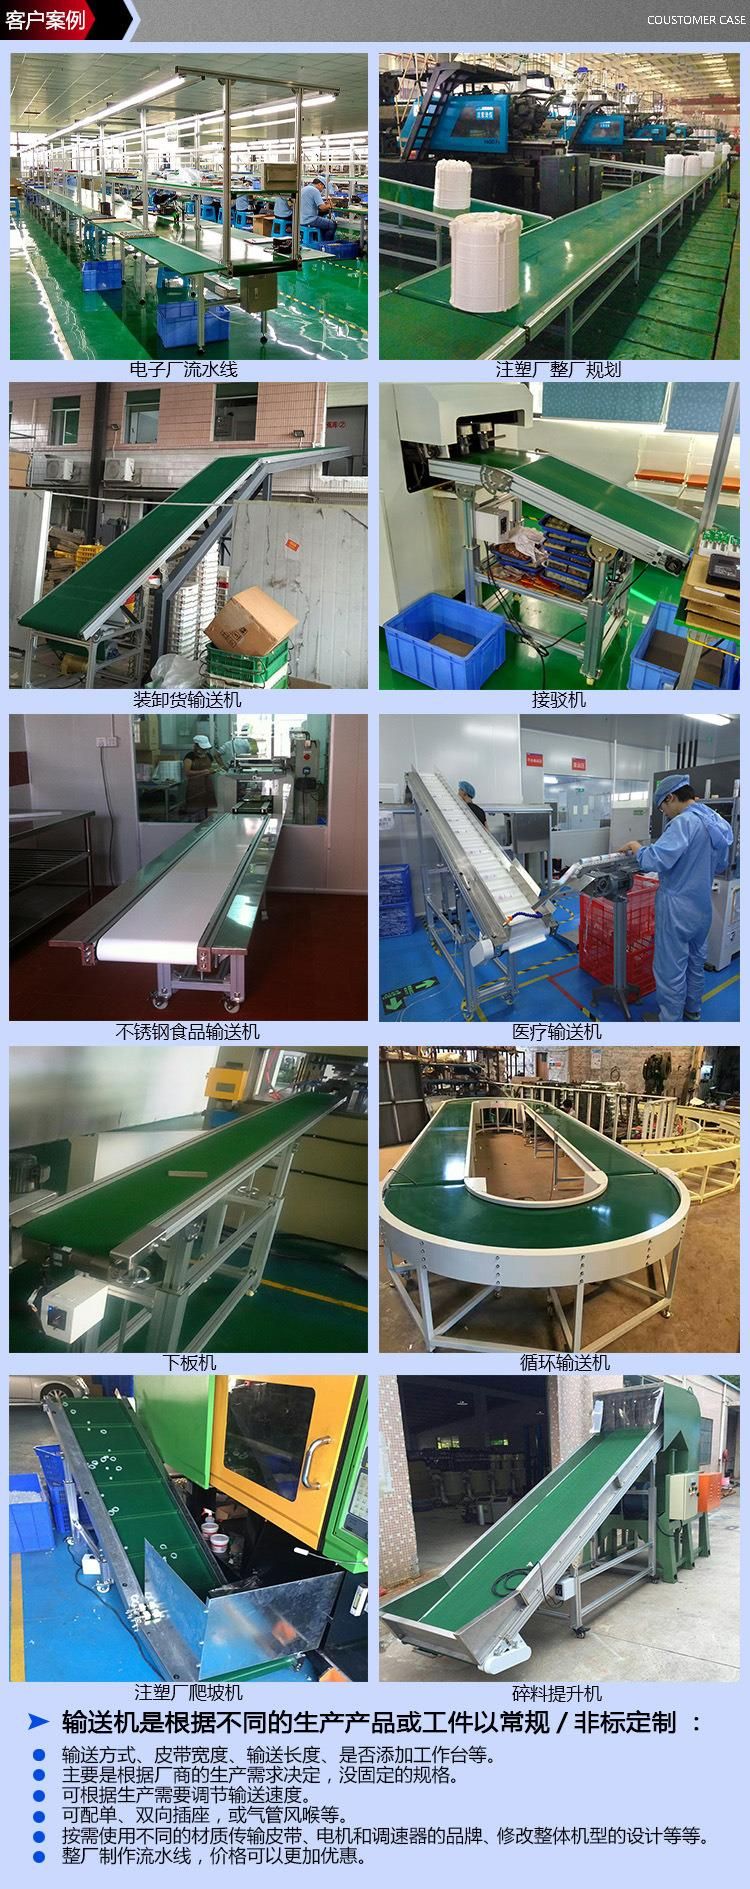 PVC Conveyor, Stainless Steel Metal material, Stocks in Factory